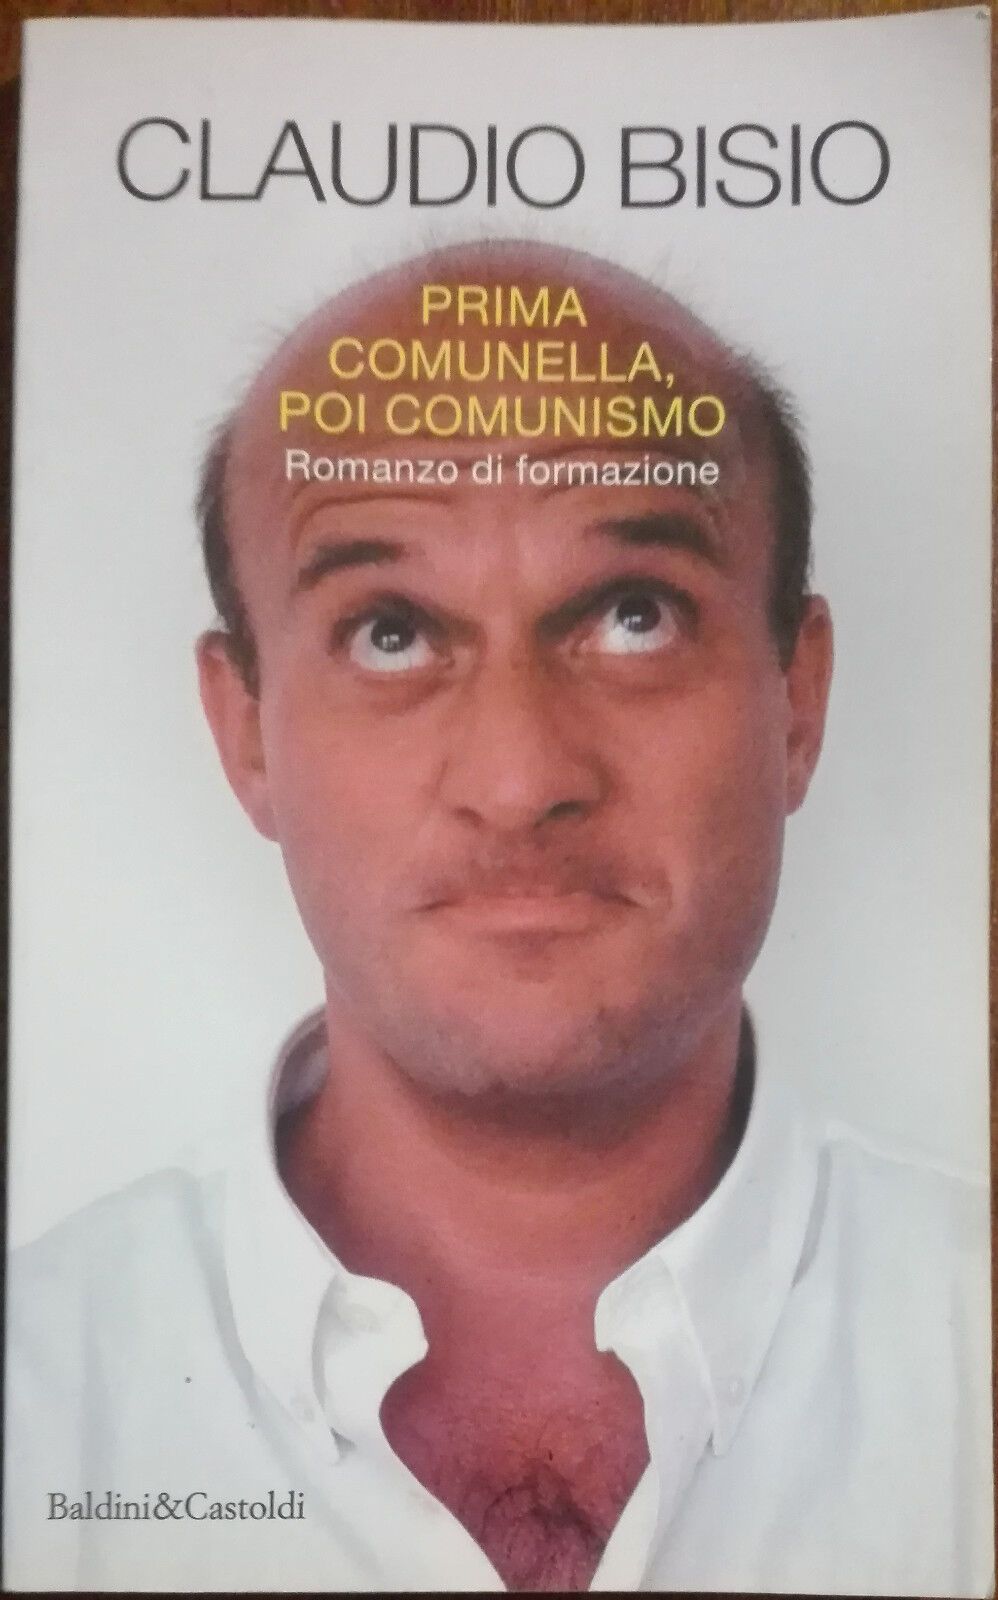 Prima comunella, poi comunismo - Claudio Bisio - Baldini&Castoldi,1996 - A libro usato